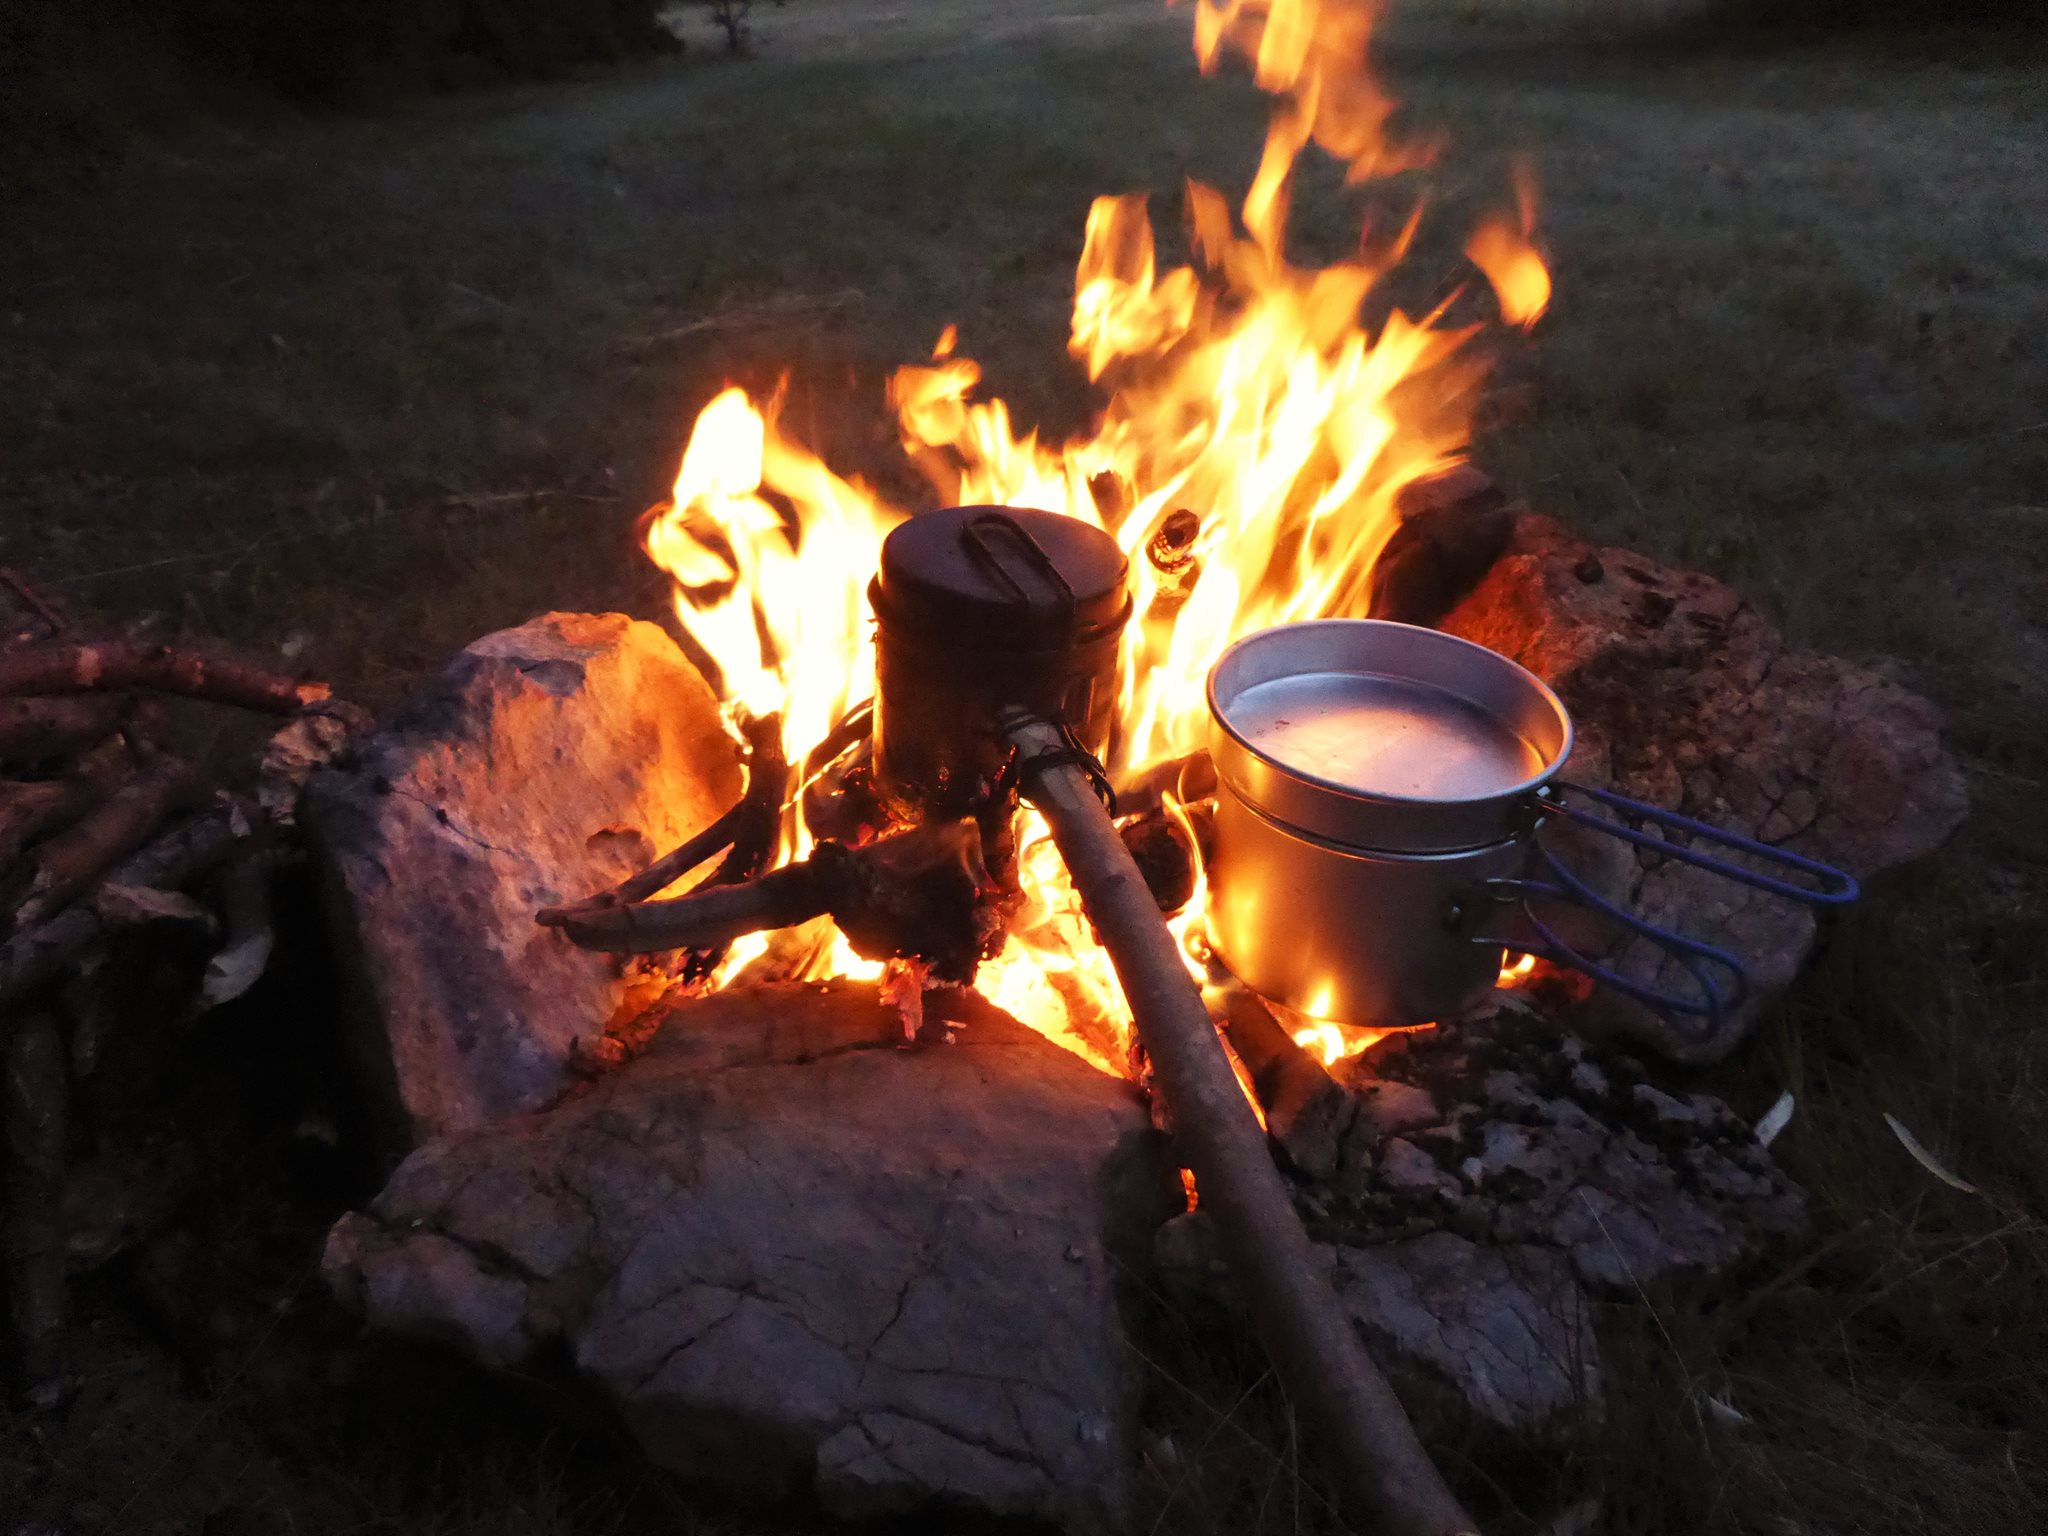 Une belle amitié c'est souvent à l'image de deux casseroles chauffant lentement dans un beau feu de bivouac...